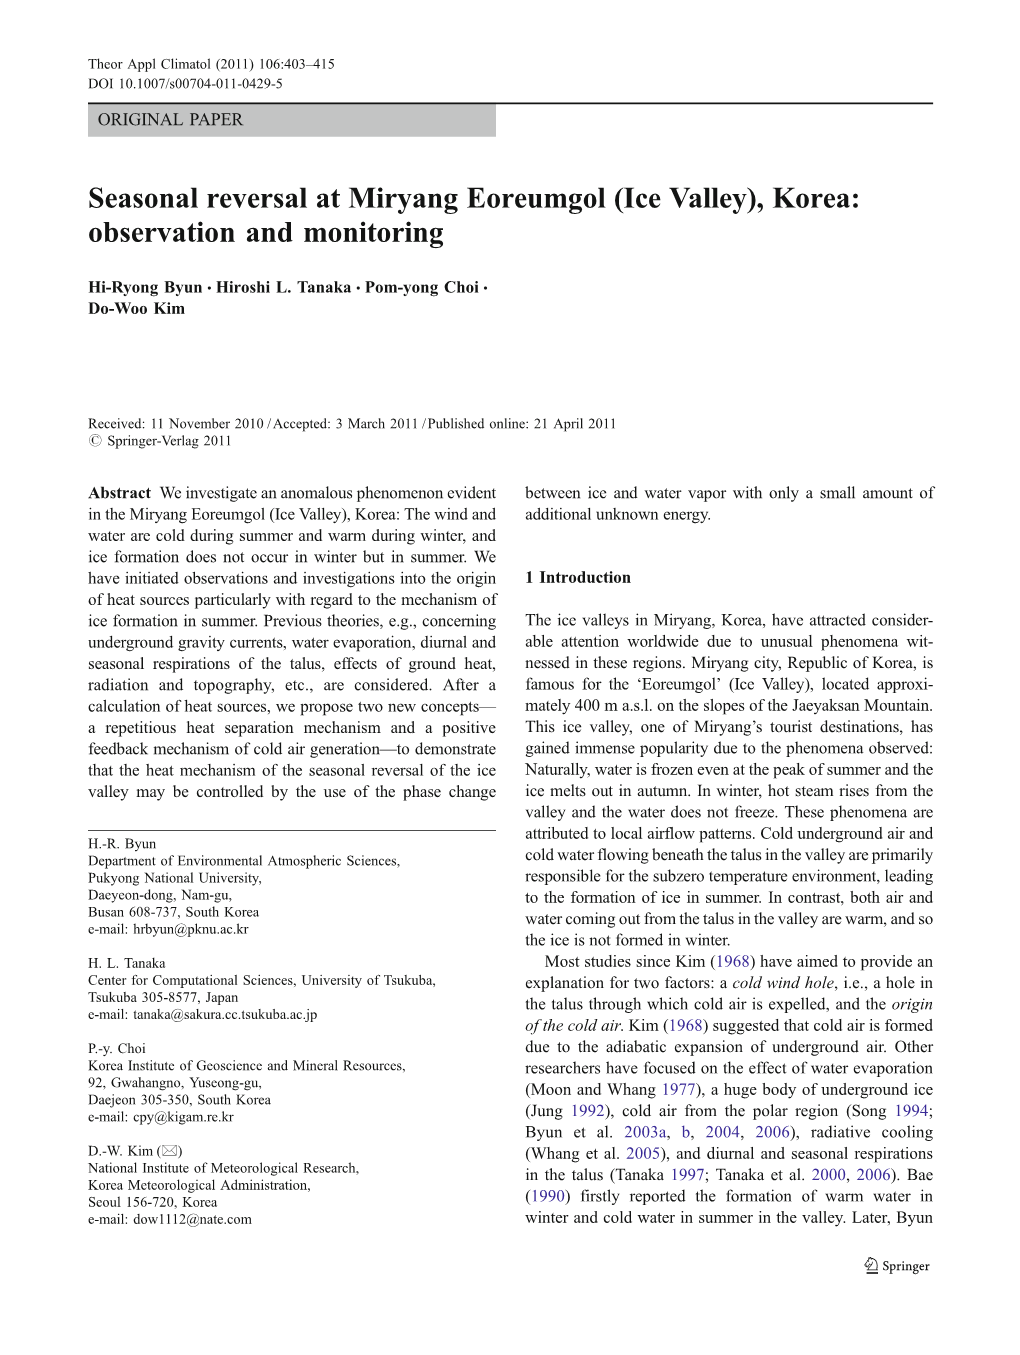 Seasonal Reversal at Miryang Eoreumgol (Ice Valley), Korea: Observation and Monitoring